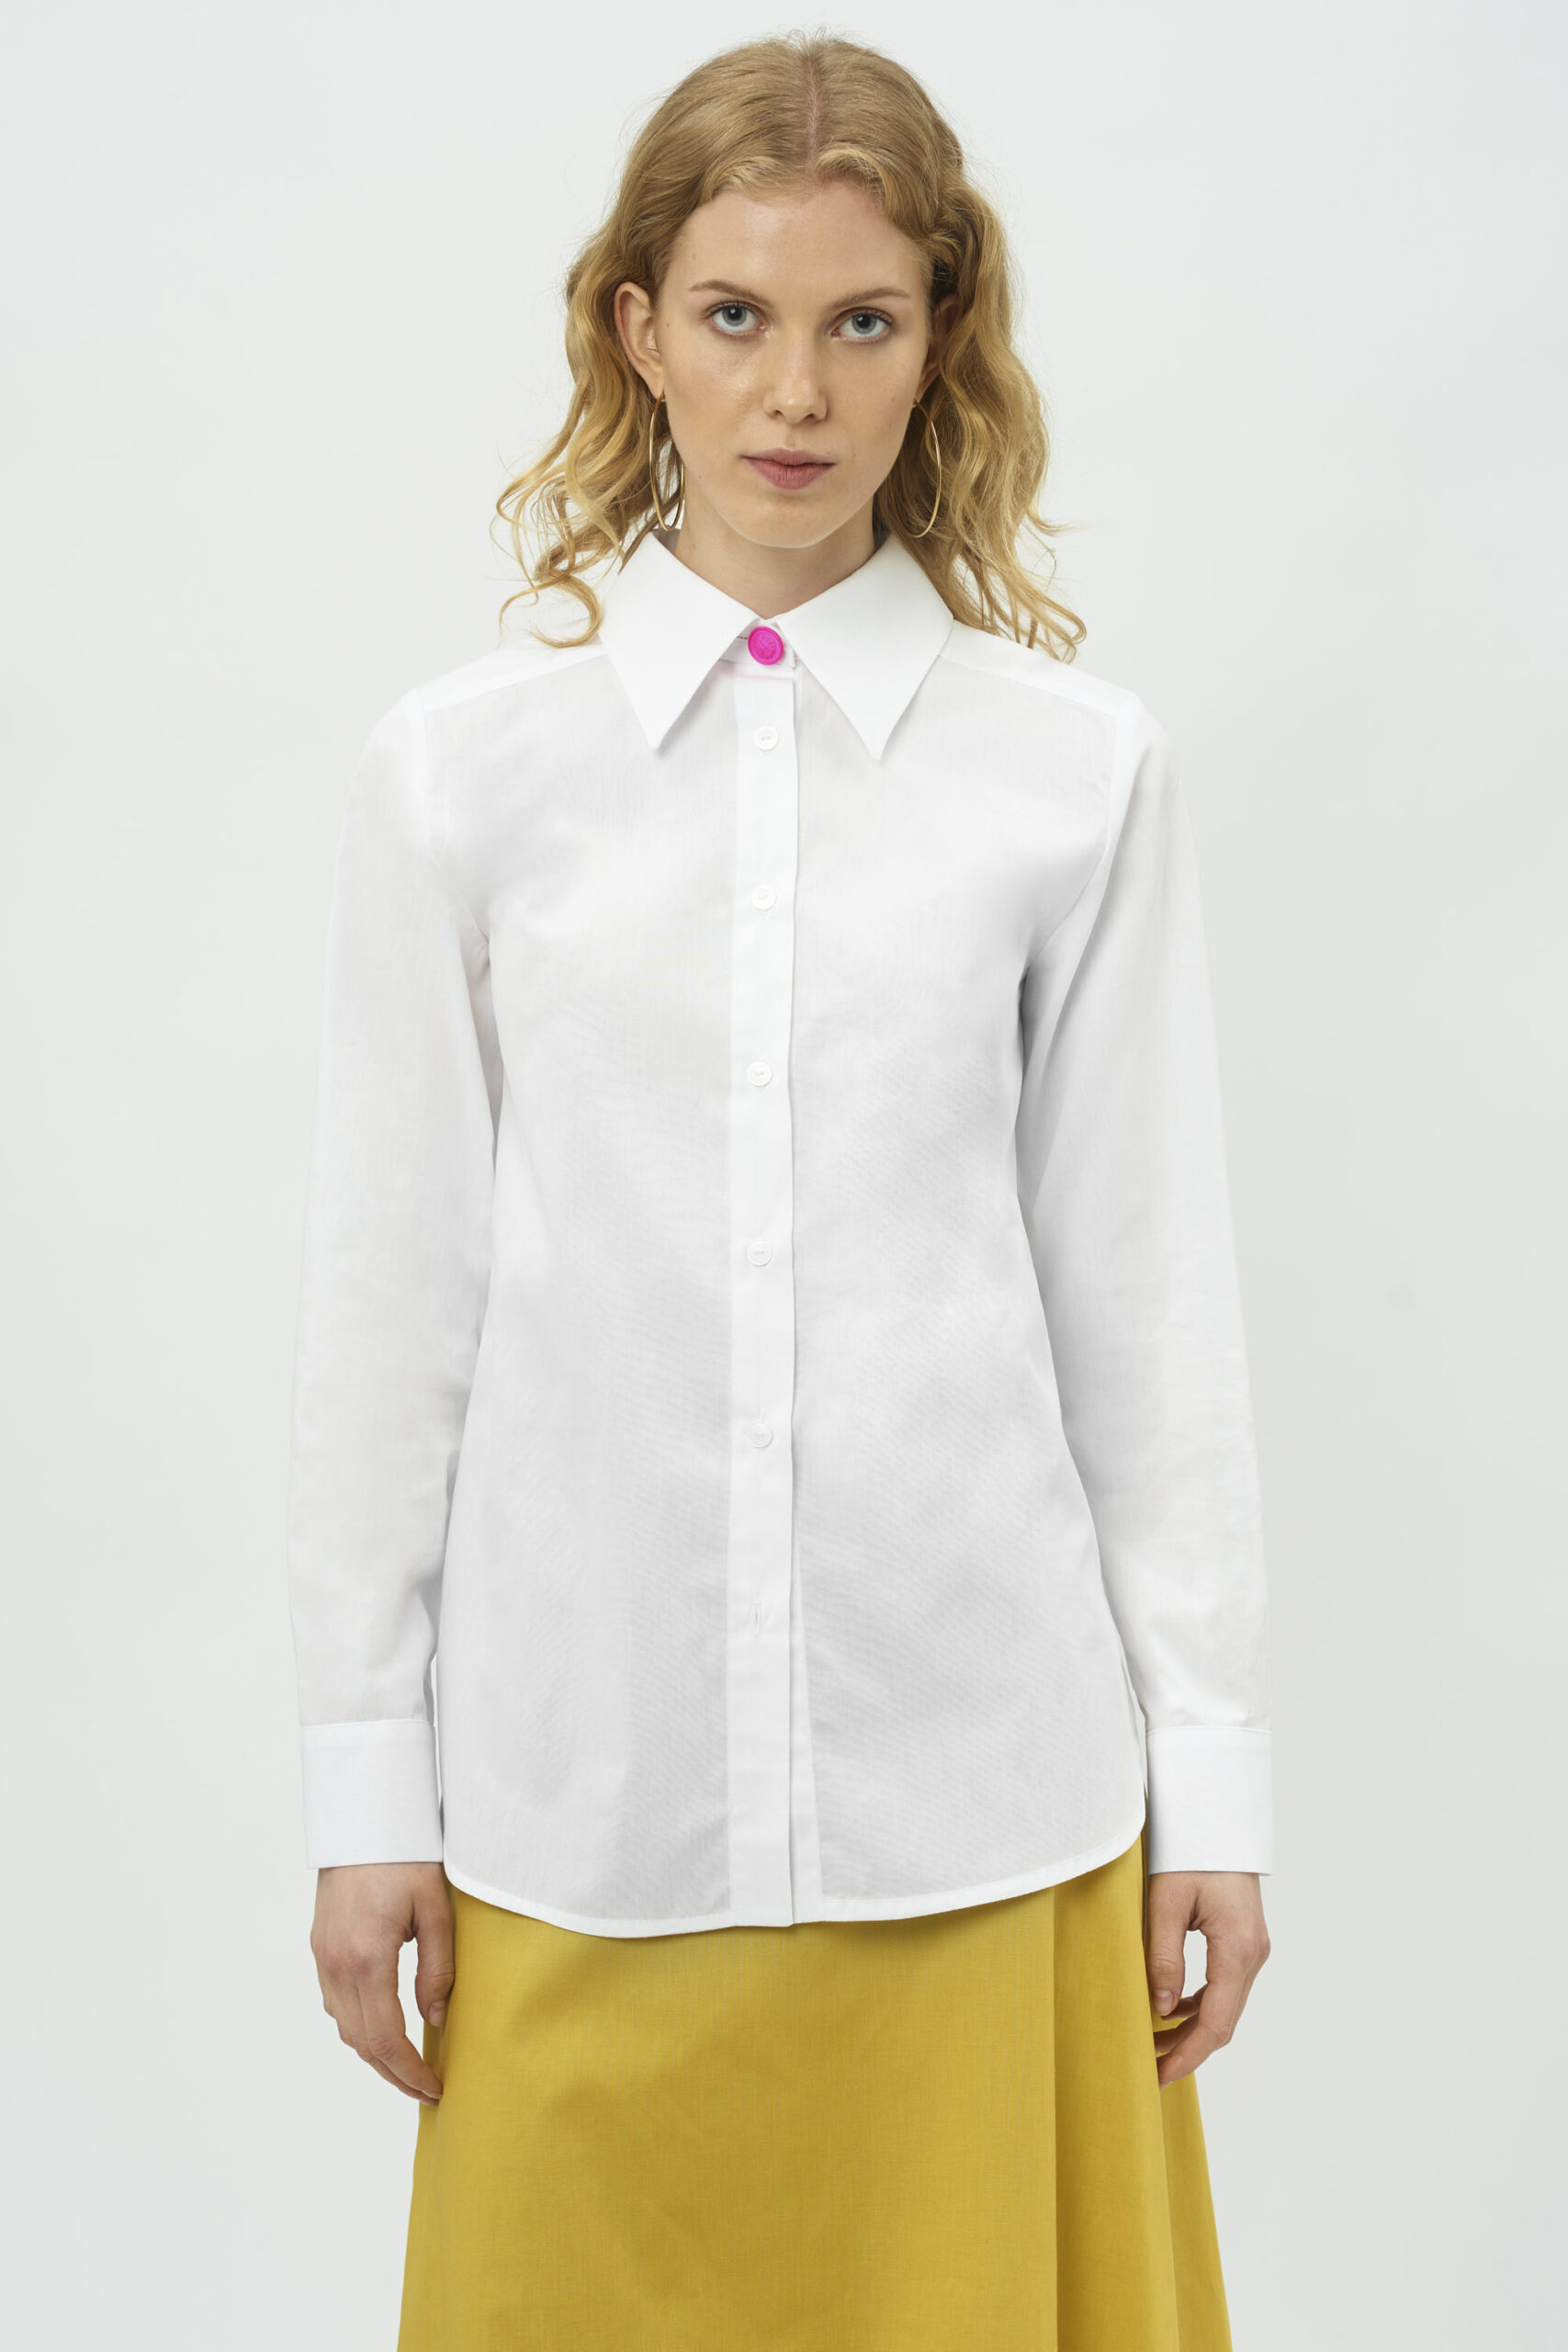 koszula bawełniana, wygodna, oversizowa, ekstrawagancka, elegancka stylizacja, włoska bawełna, oryginalna biała koszula, super jakość